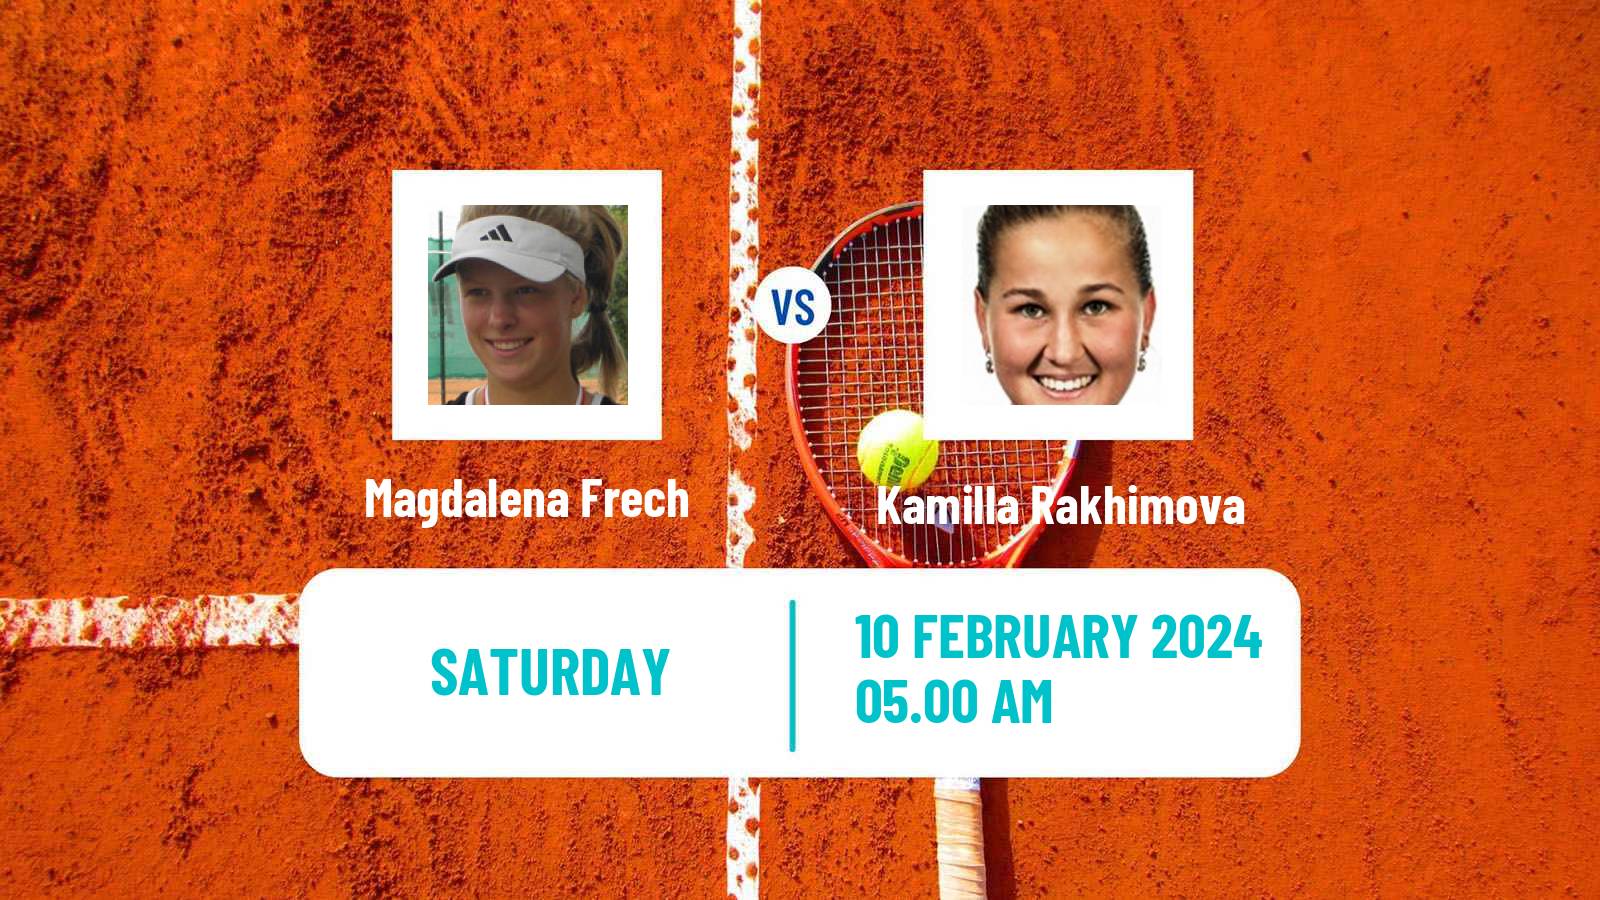 Tennis WTA Doha Magdalena Frech - Kamilla Rakhimova